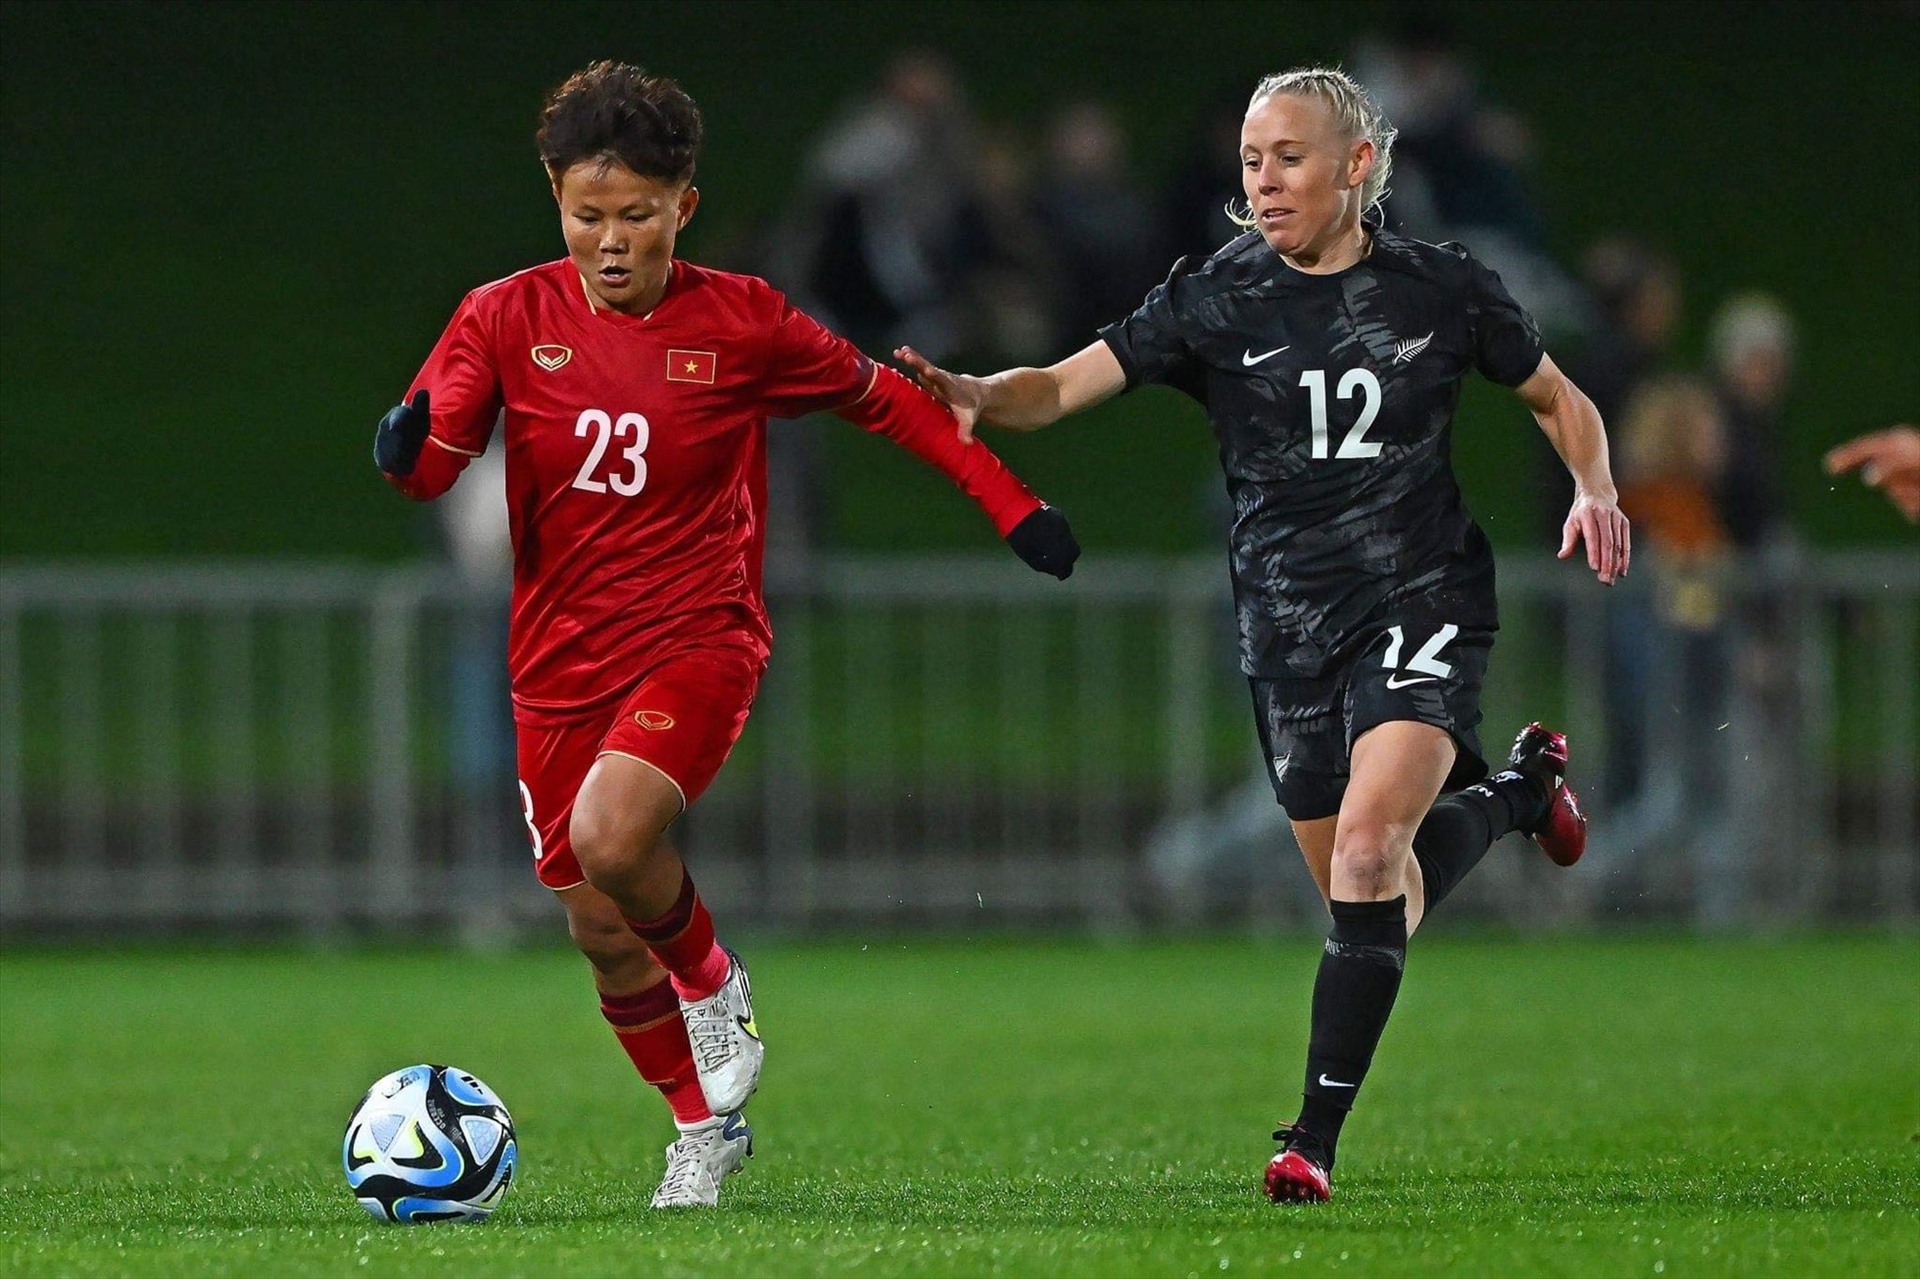 World Cup là cú hích để đầu tư cho bóng đá nữ Việt Nam trong tương lai